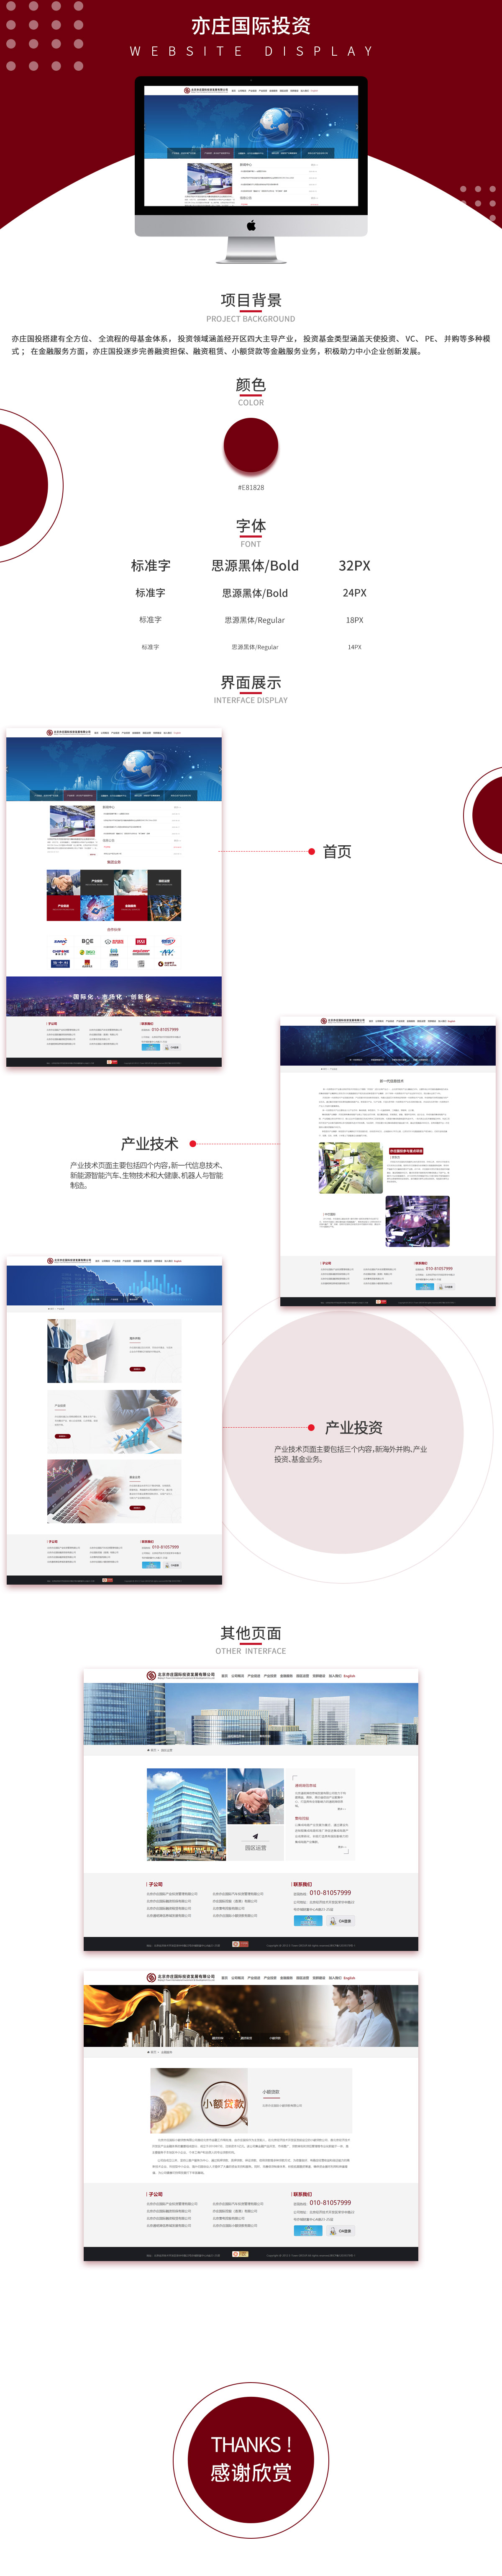 北京亦庄国际投资发展有限企业品牌网站